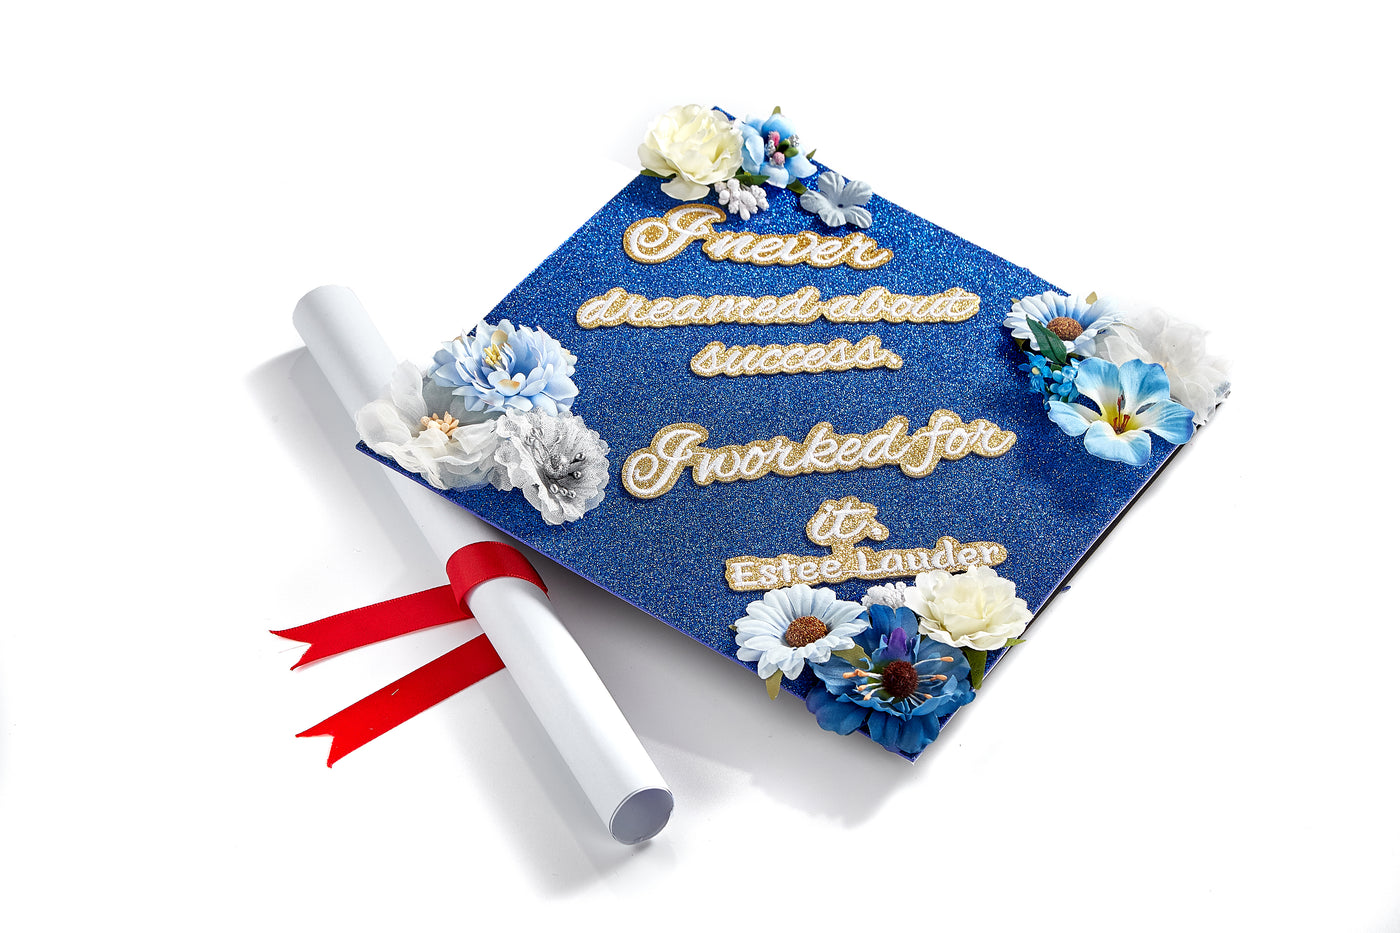 Handmade Graduation Cap Topper, Graduation Cap Decorations, I Never Dreamed About Success